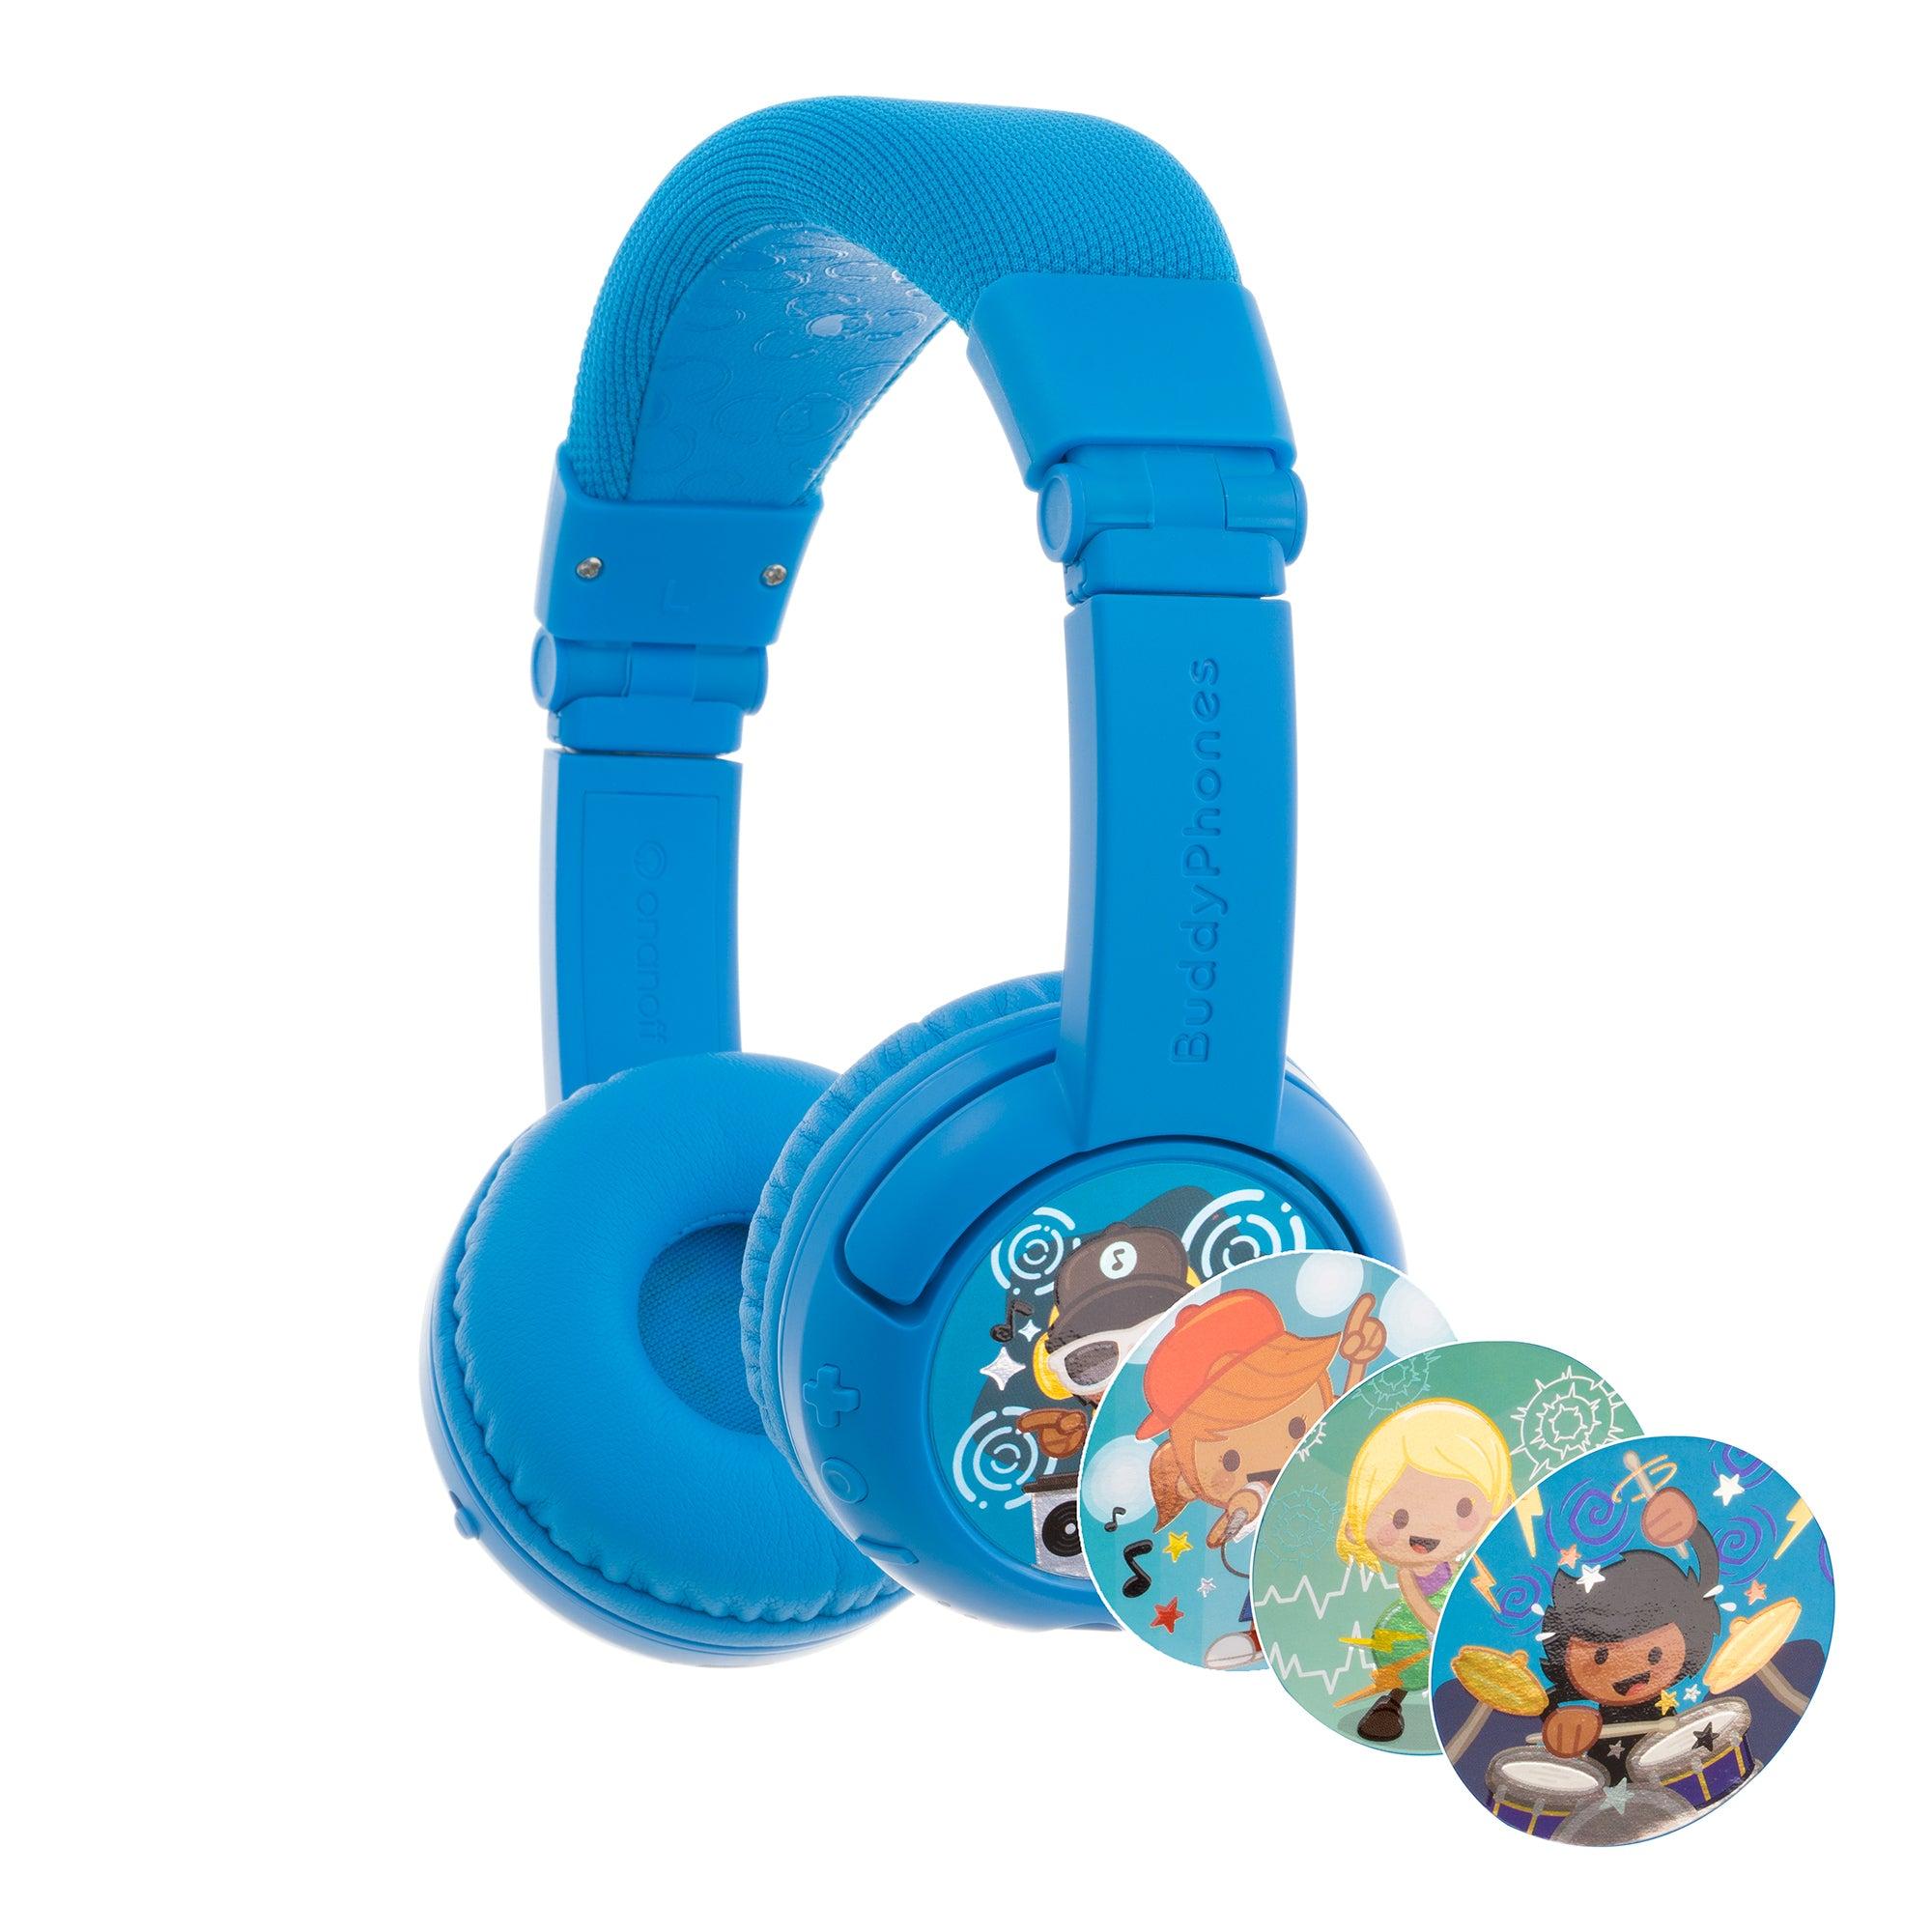 سماعات بلوتوث للأطفال لون أزرقBuddyPhones Play Plus Wireless Bluetooth for Kids - ONANOFF